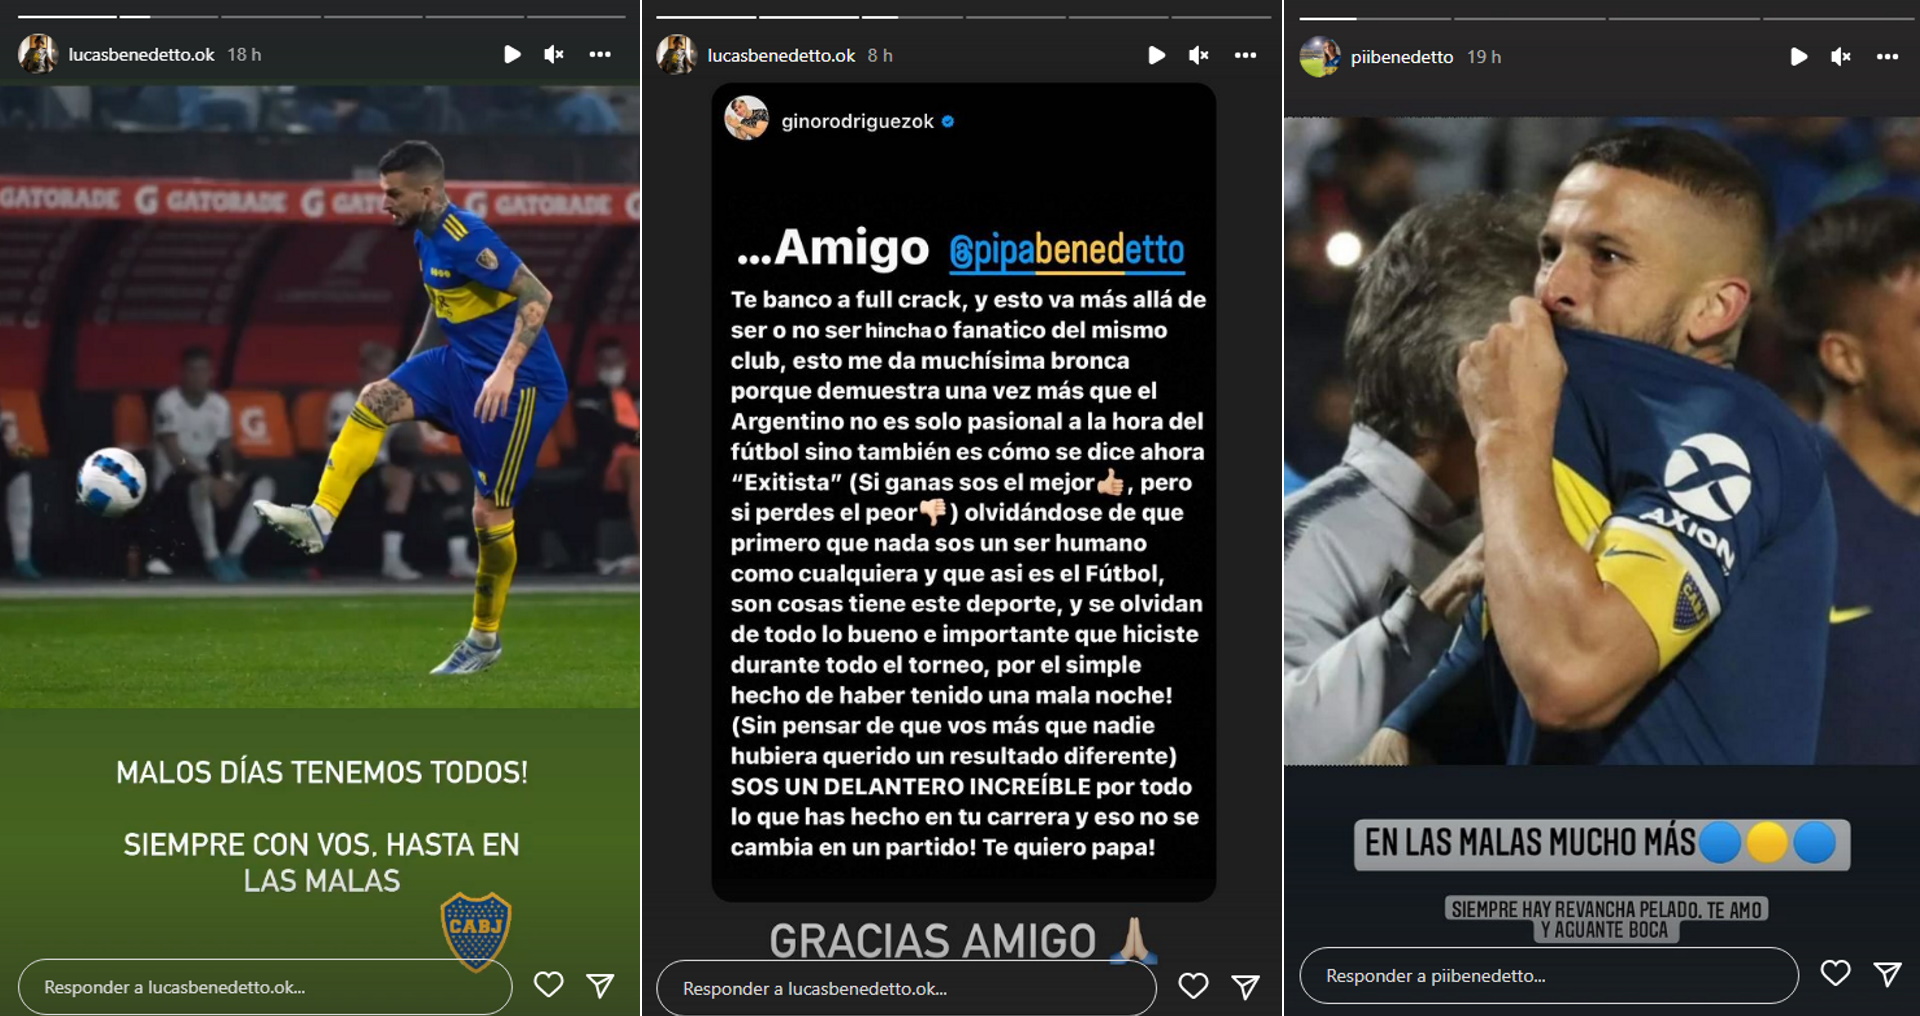 Los mensajes de apoyo de Lucas y Pipi, hermanos de Darío Benedetto (Instagrama)